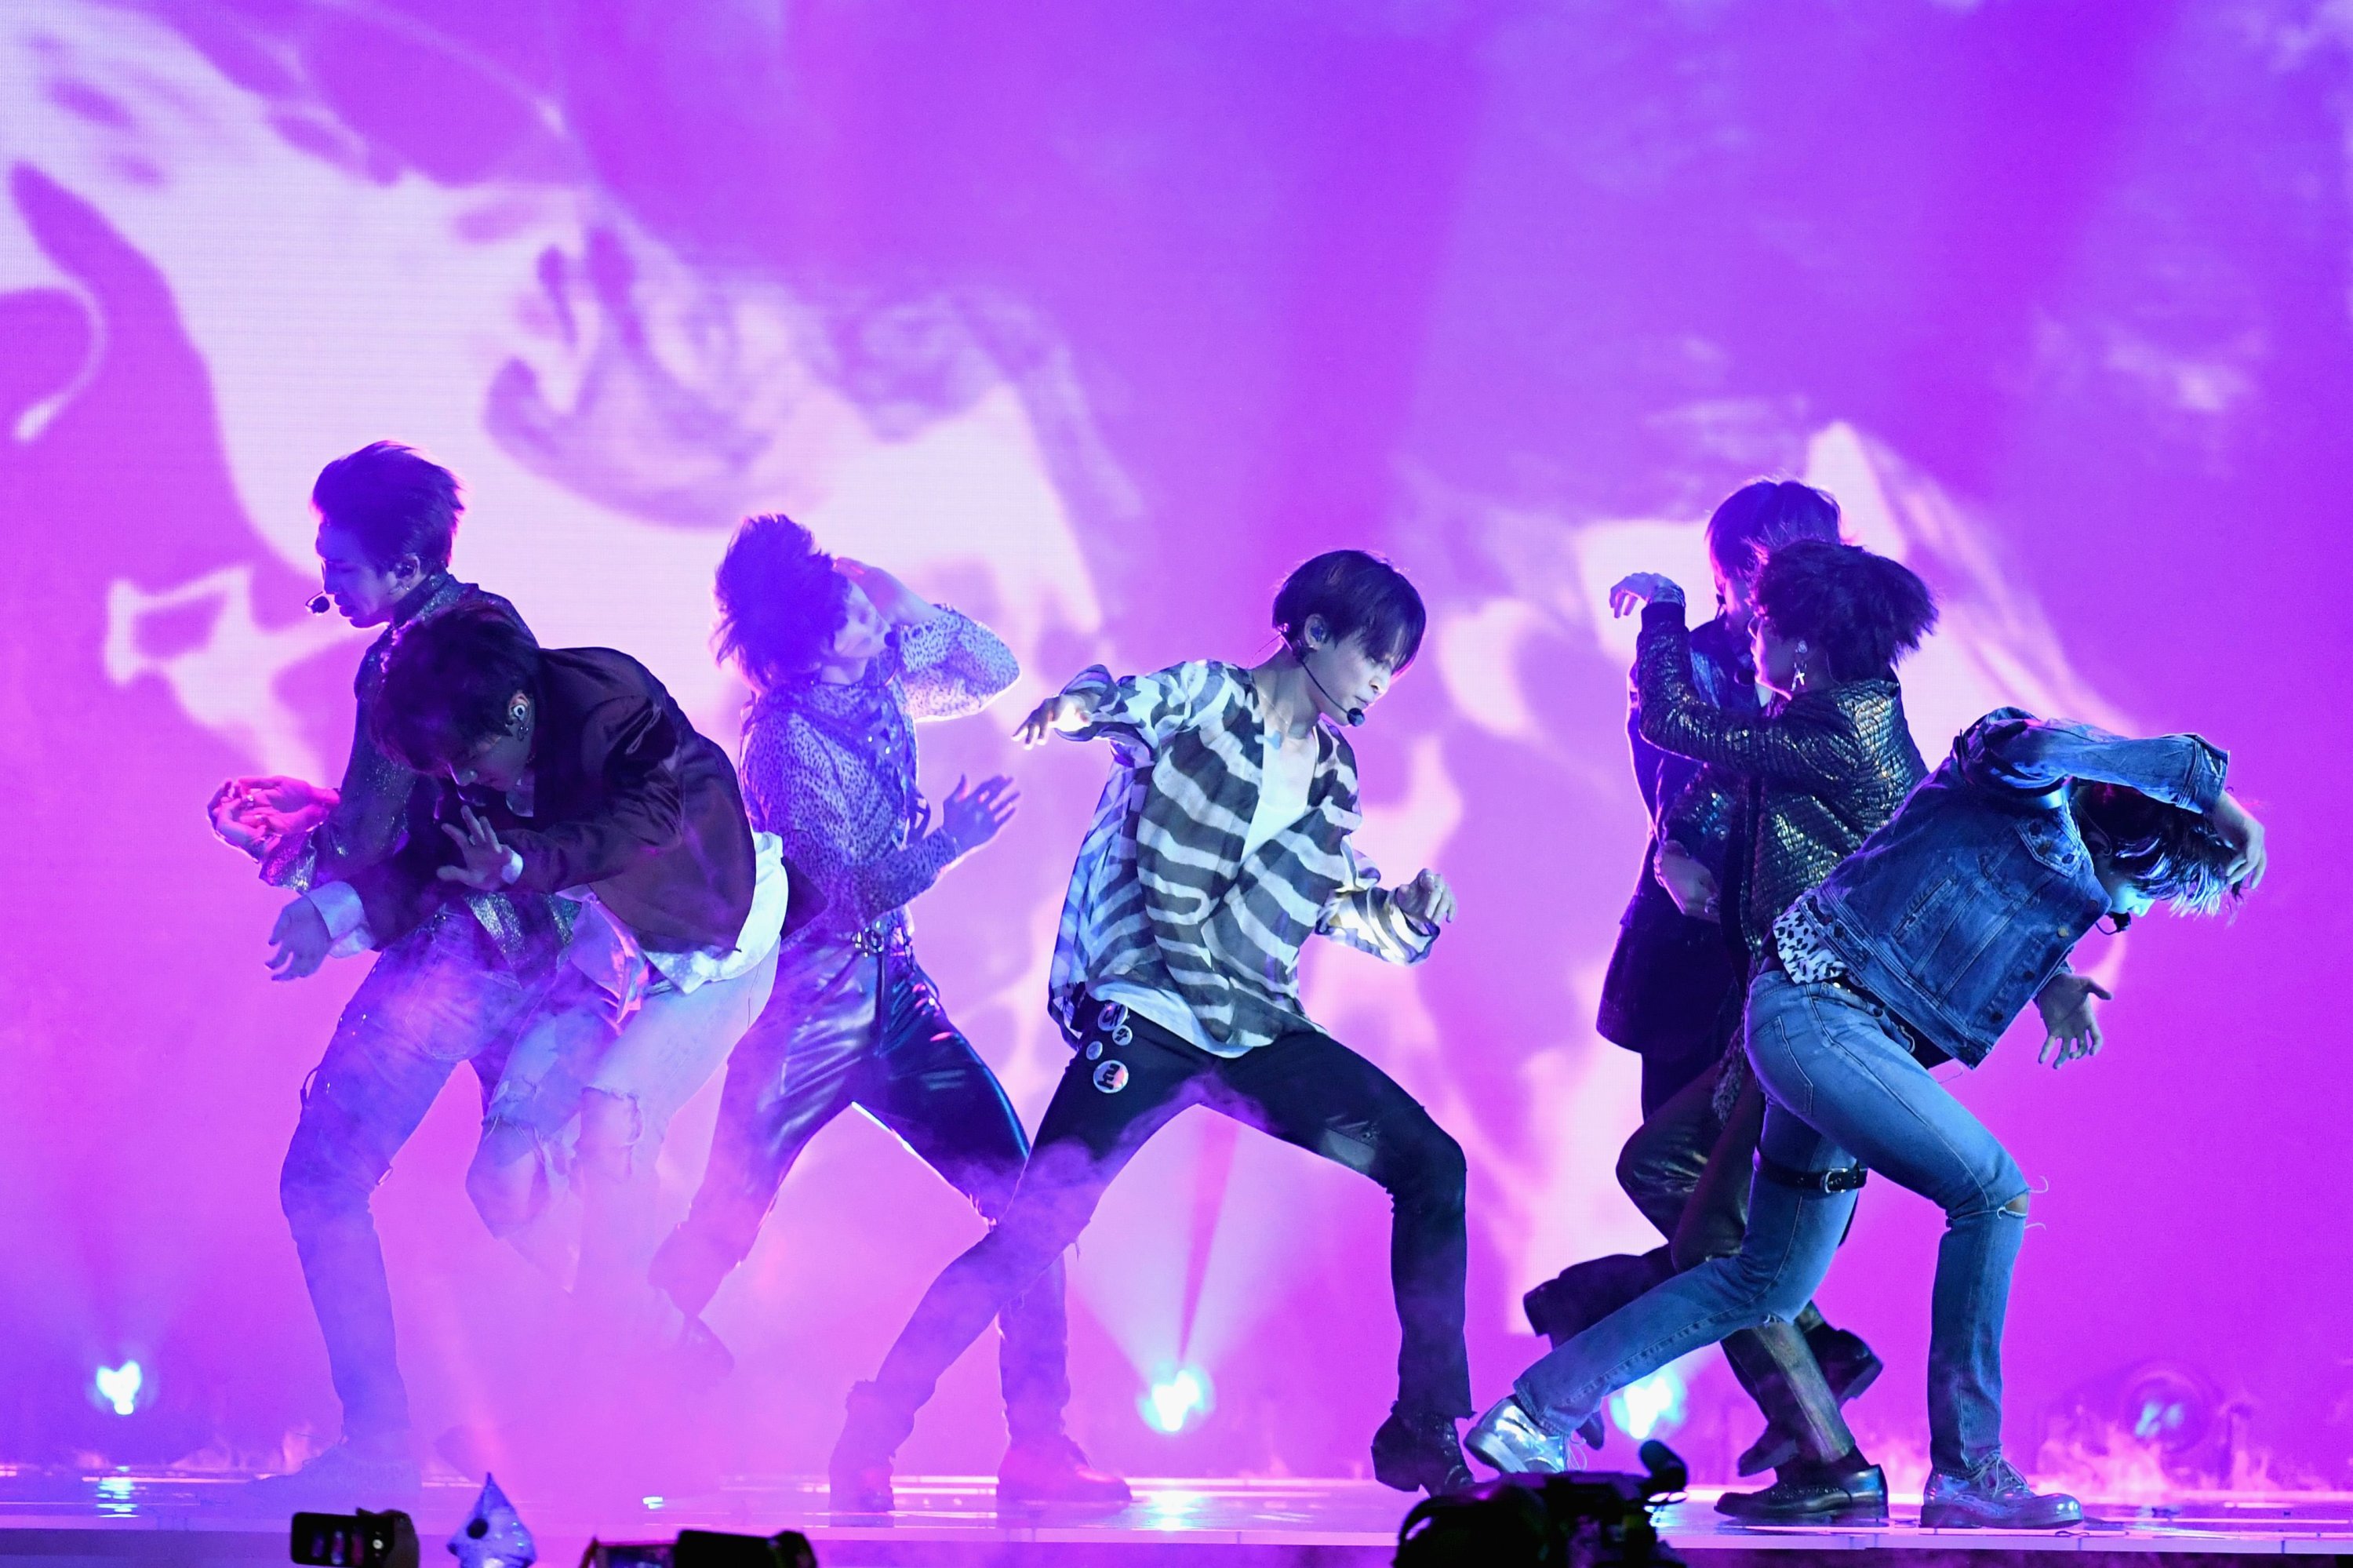 그룹 방탄소년단(BTS)이 20일(현지시간) 미국 네바다주 라스베이거스 MGM 그랜드 가든 아레나에서 열린 2018 빌보드 뮤직 어워드 무대에서 공연을 펼치고 있다.  (AFP)